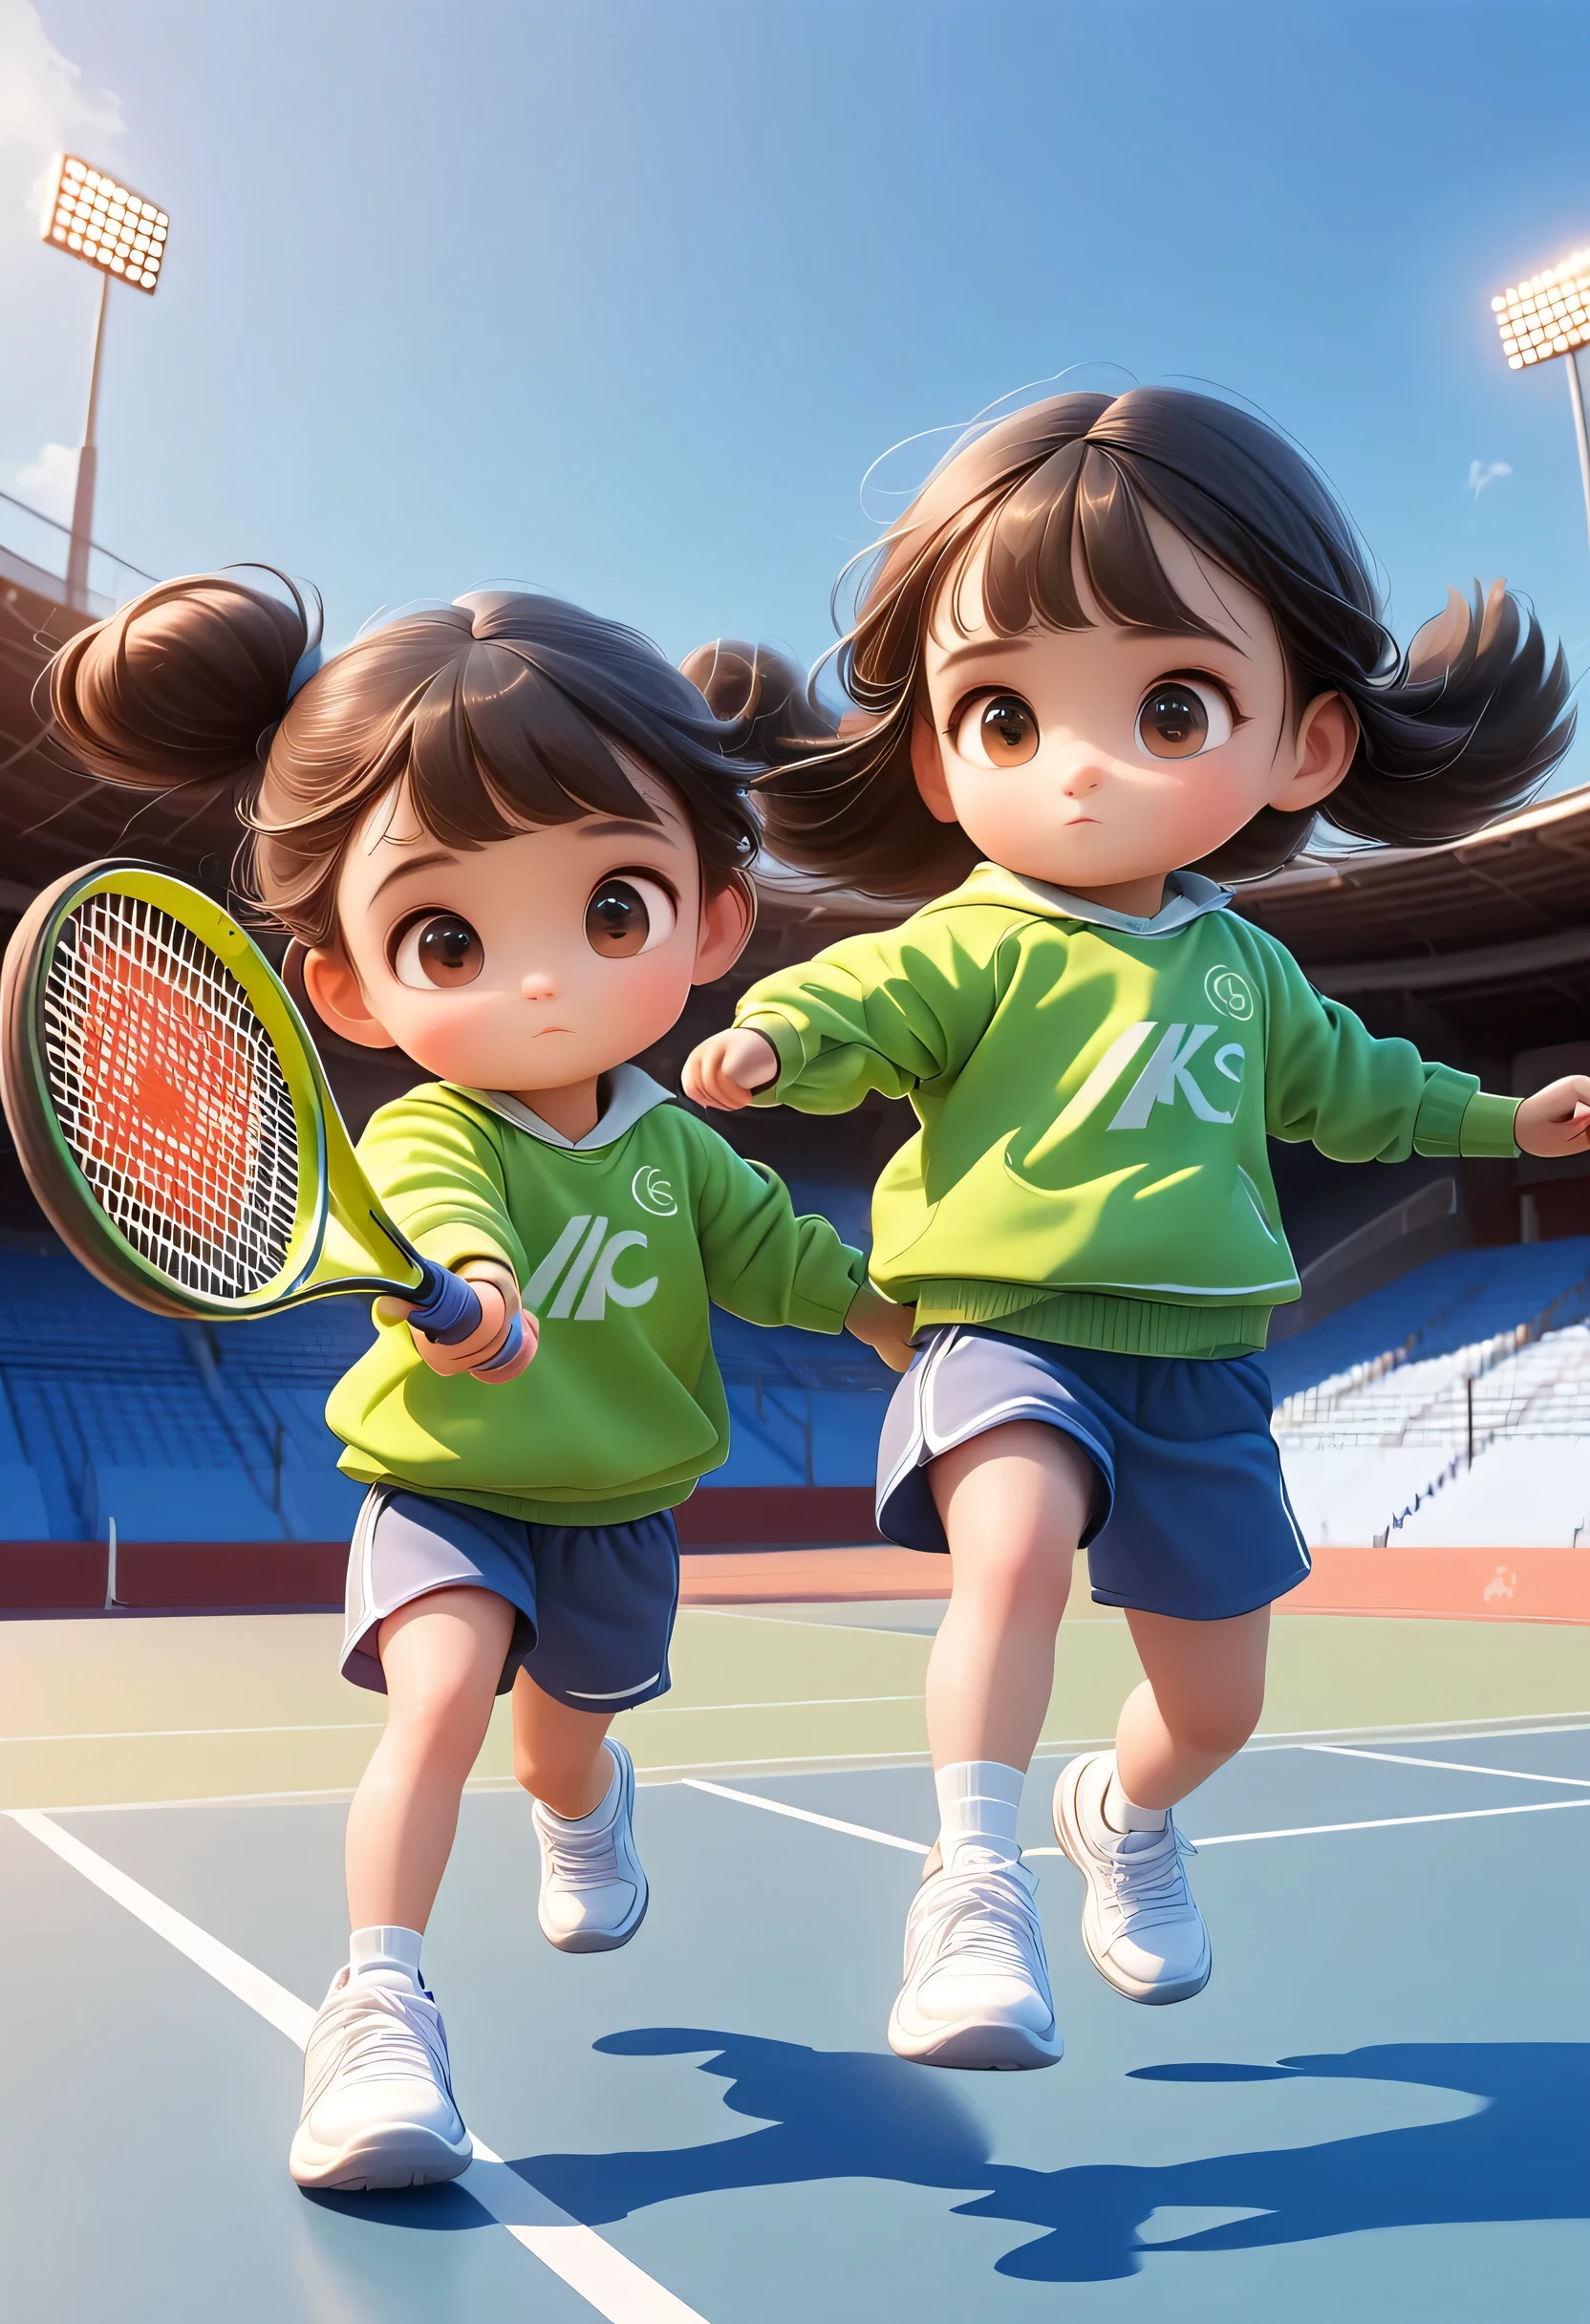 3D, 남자아이 1명, 소녀 1명, 테니스, 테니스 court, 공을 바구니에 넣다, 운동복, 만화 스타일, 스포츠 경기장